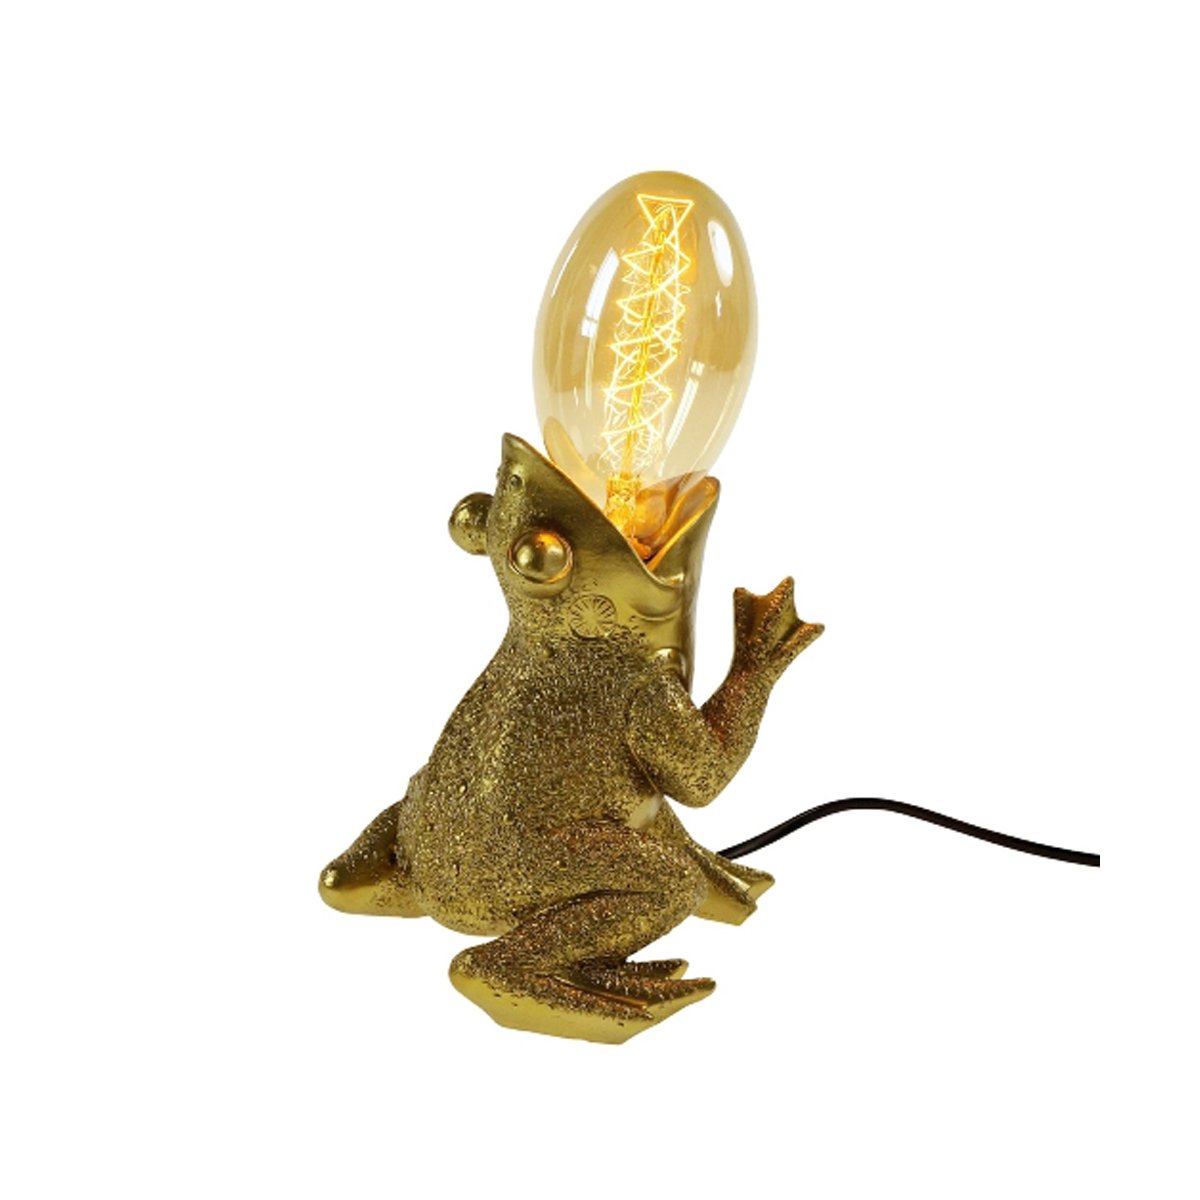 Tischleuchte Lampe Frosch Froggy € - 58,95 gold Tischlampe, Deko, Dekoleuchte